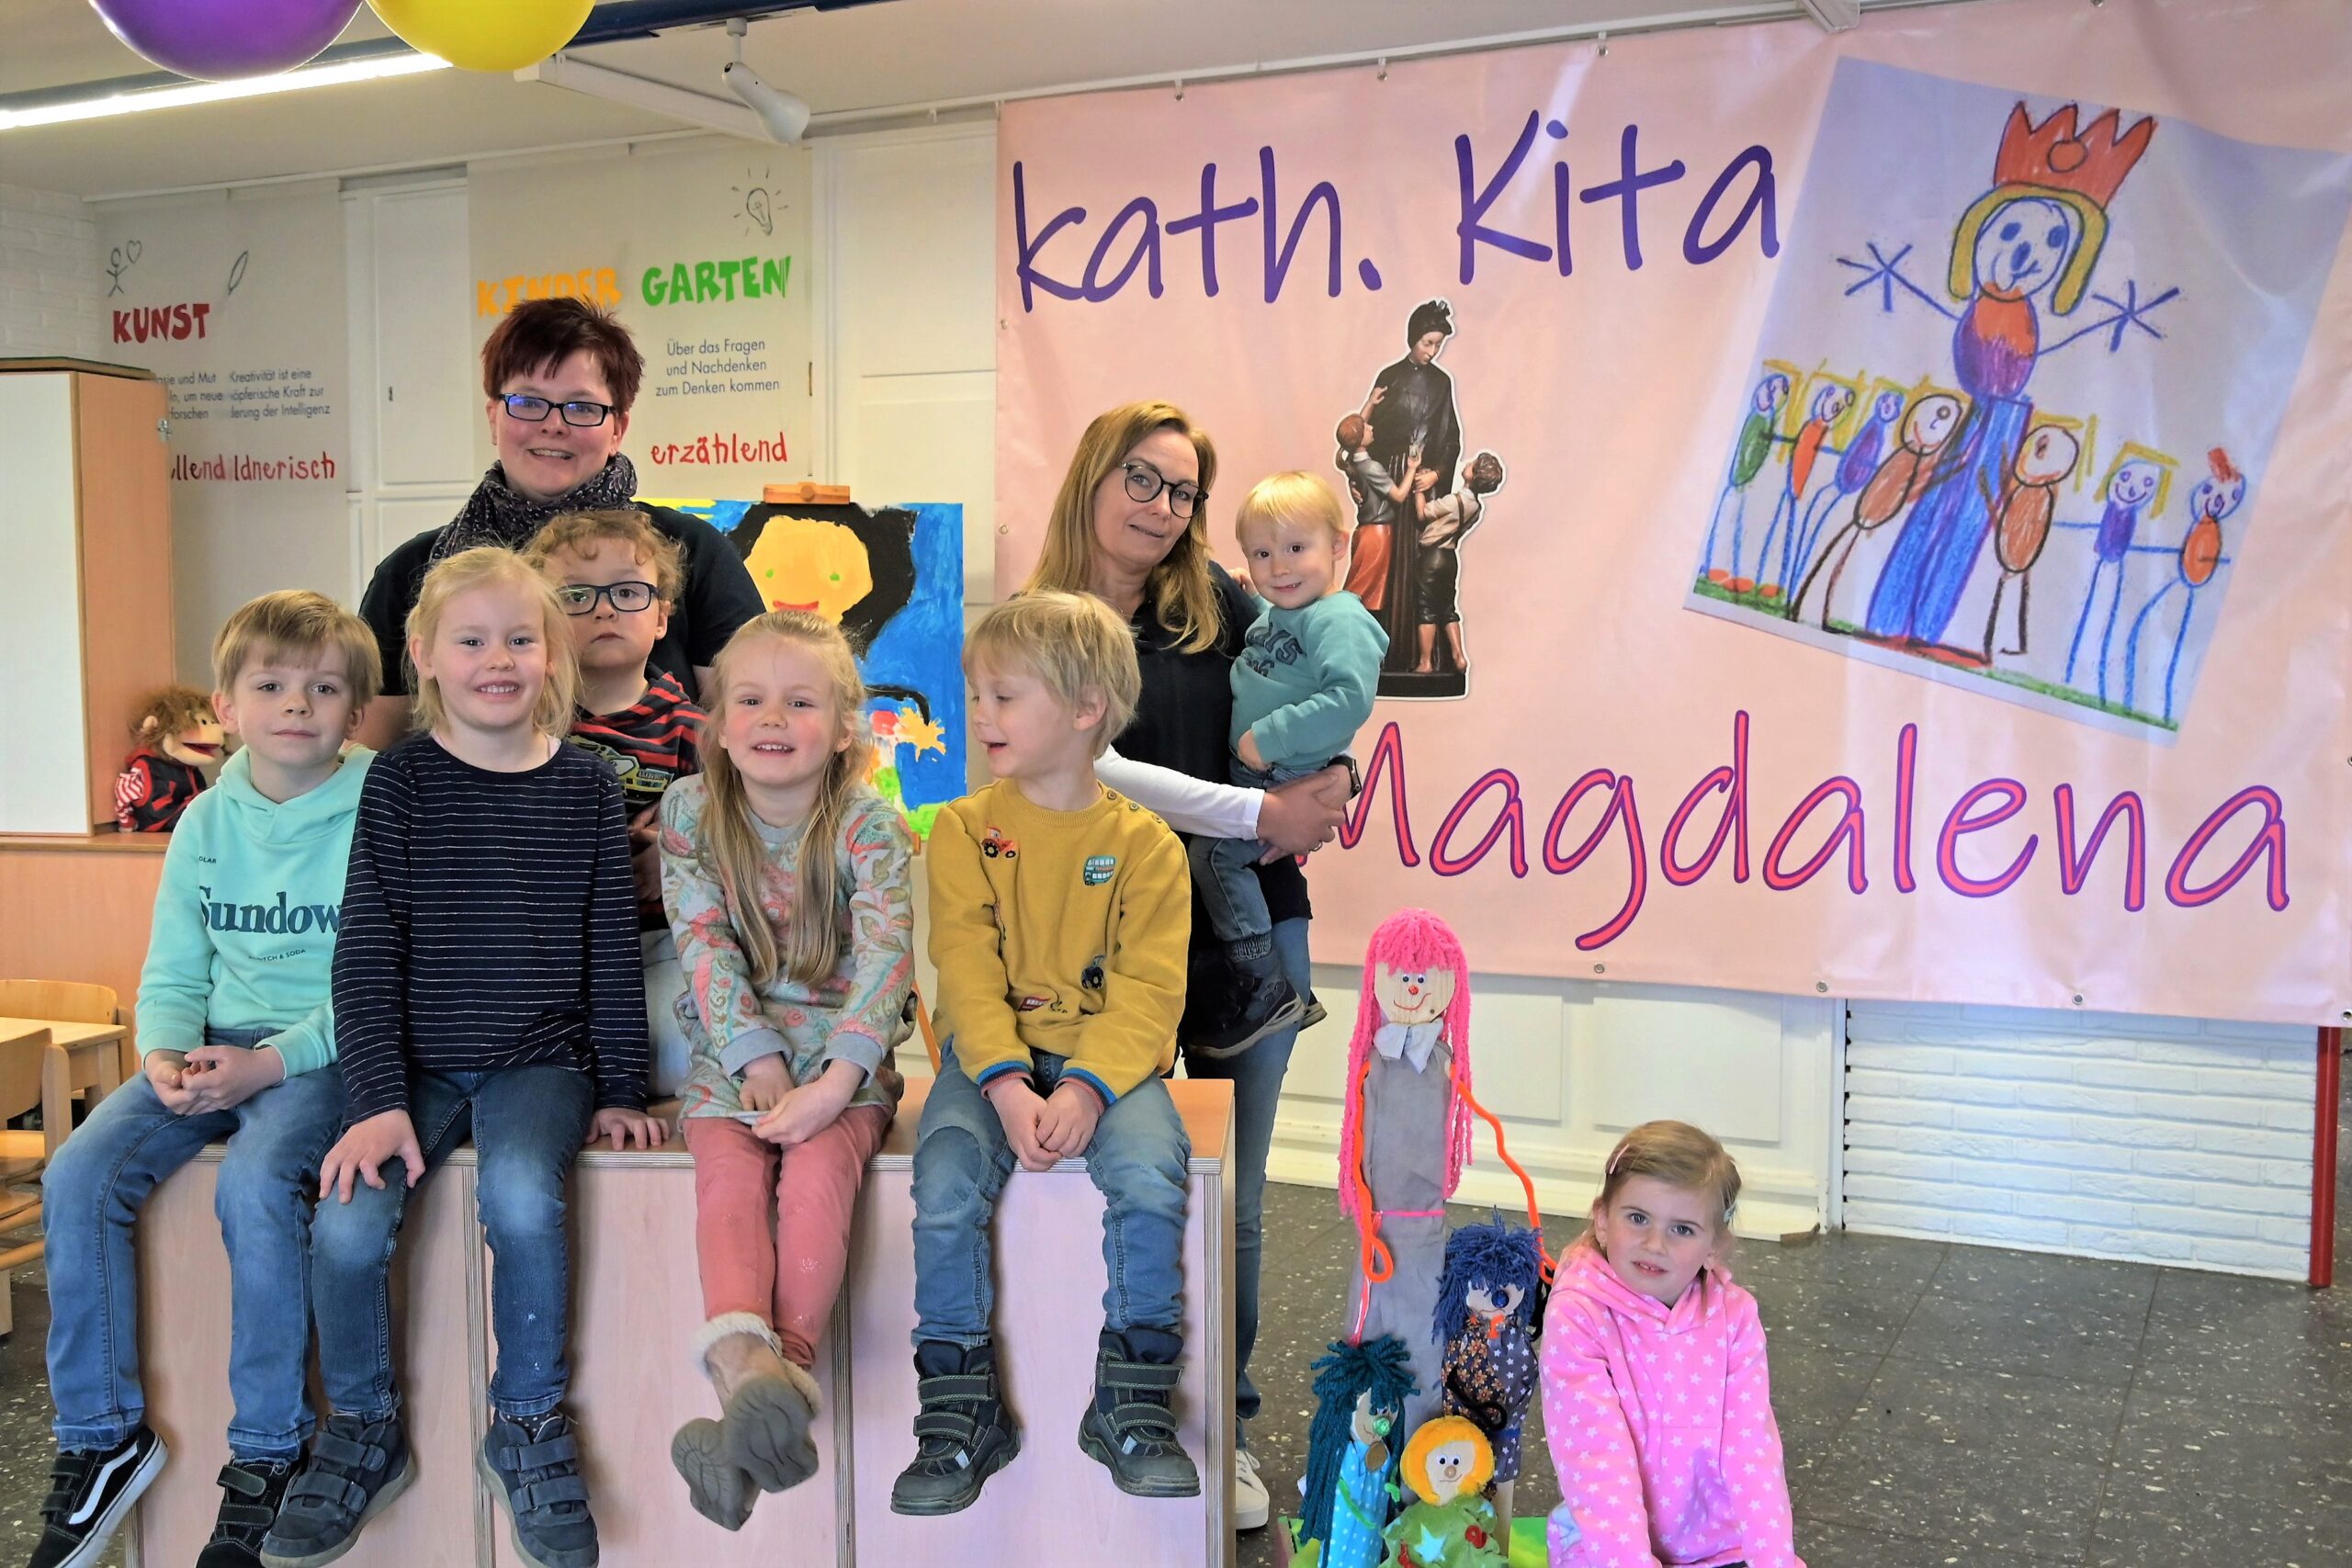 Die Kinder Jonas, Charlotte, Jannik, Lia, Emil, Lasse und Tilda freuen sich mit Britta Kinzer und Katja Dammhorst über den neuen Namen ihrer Kindertageseinrichtung „Kath. Kita St. Magdalena“.